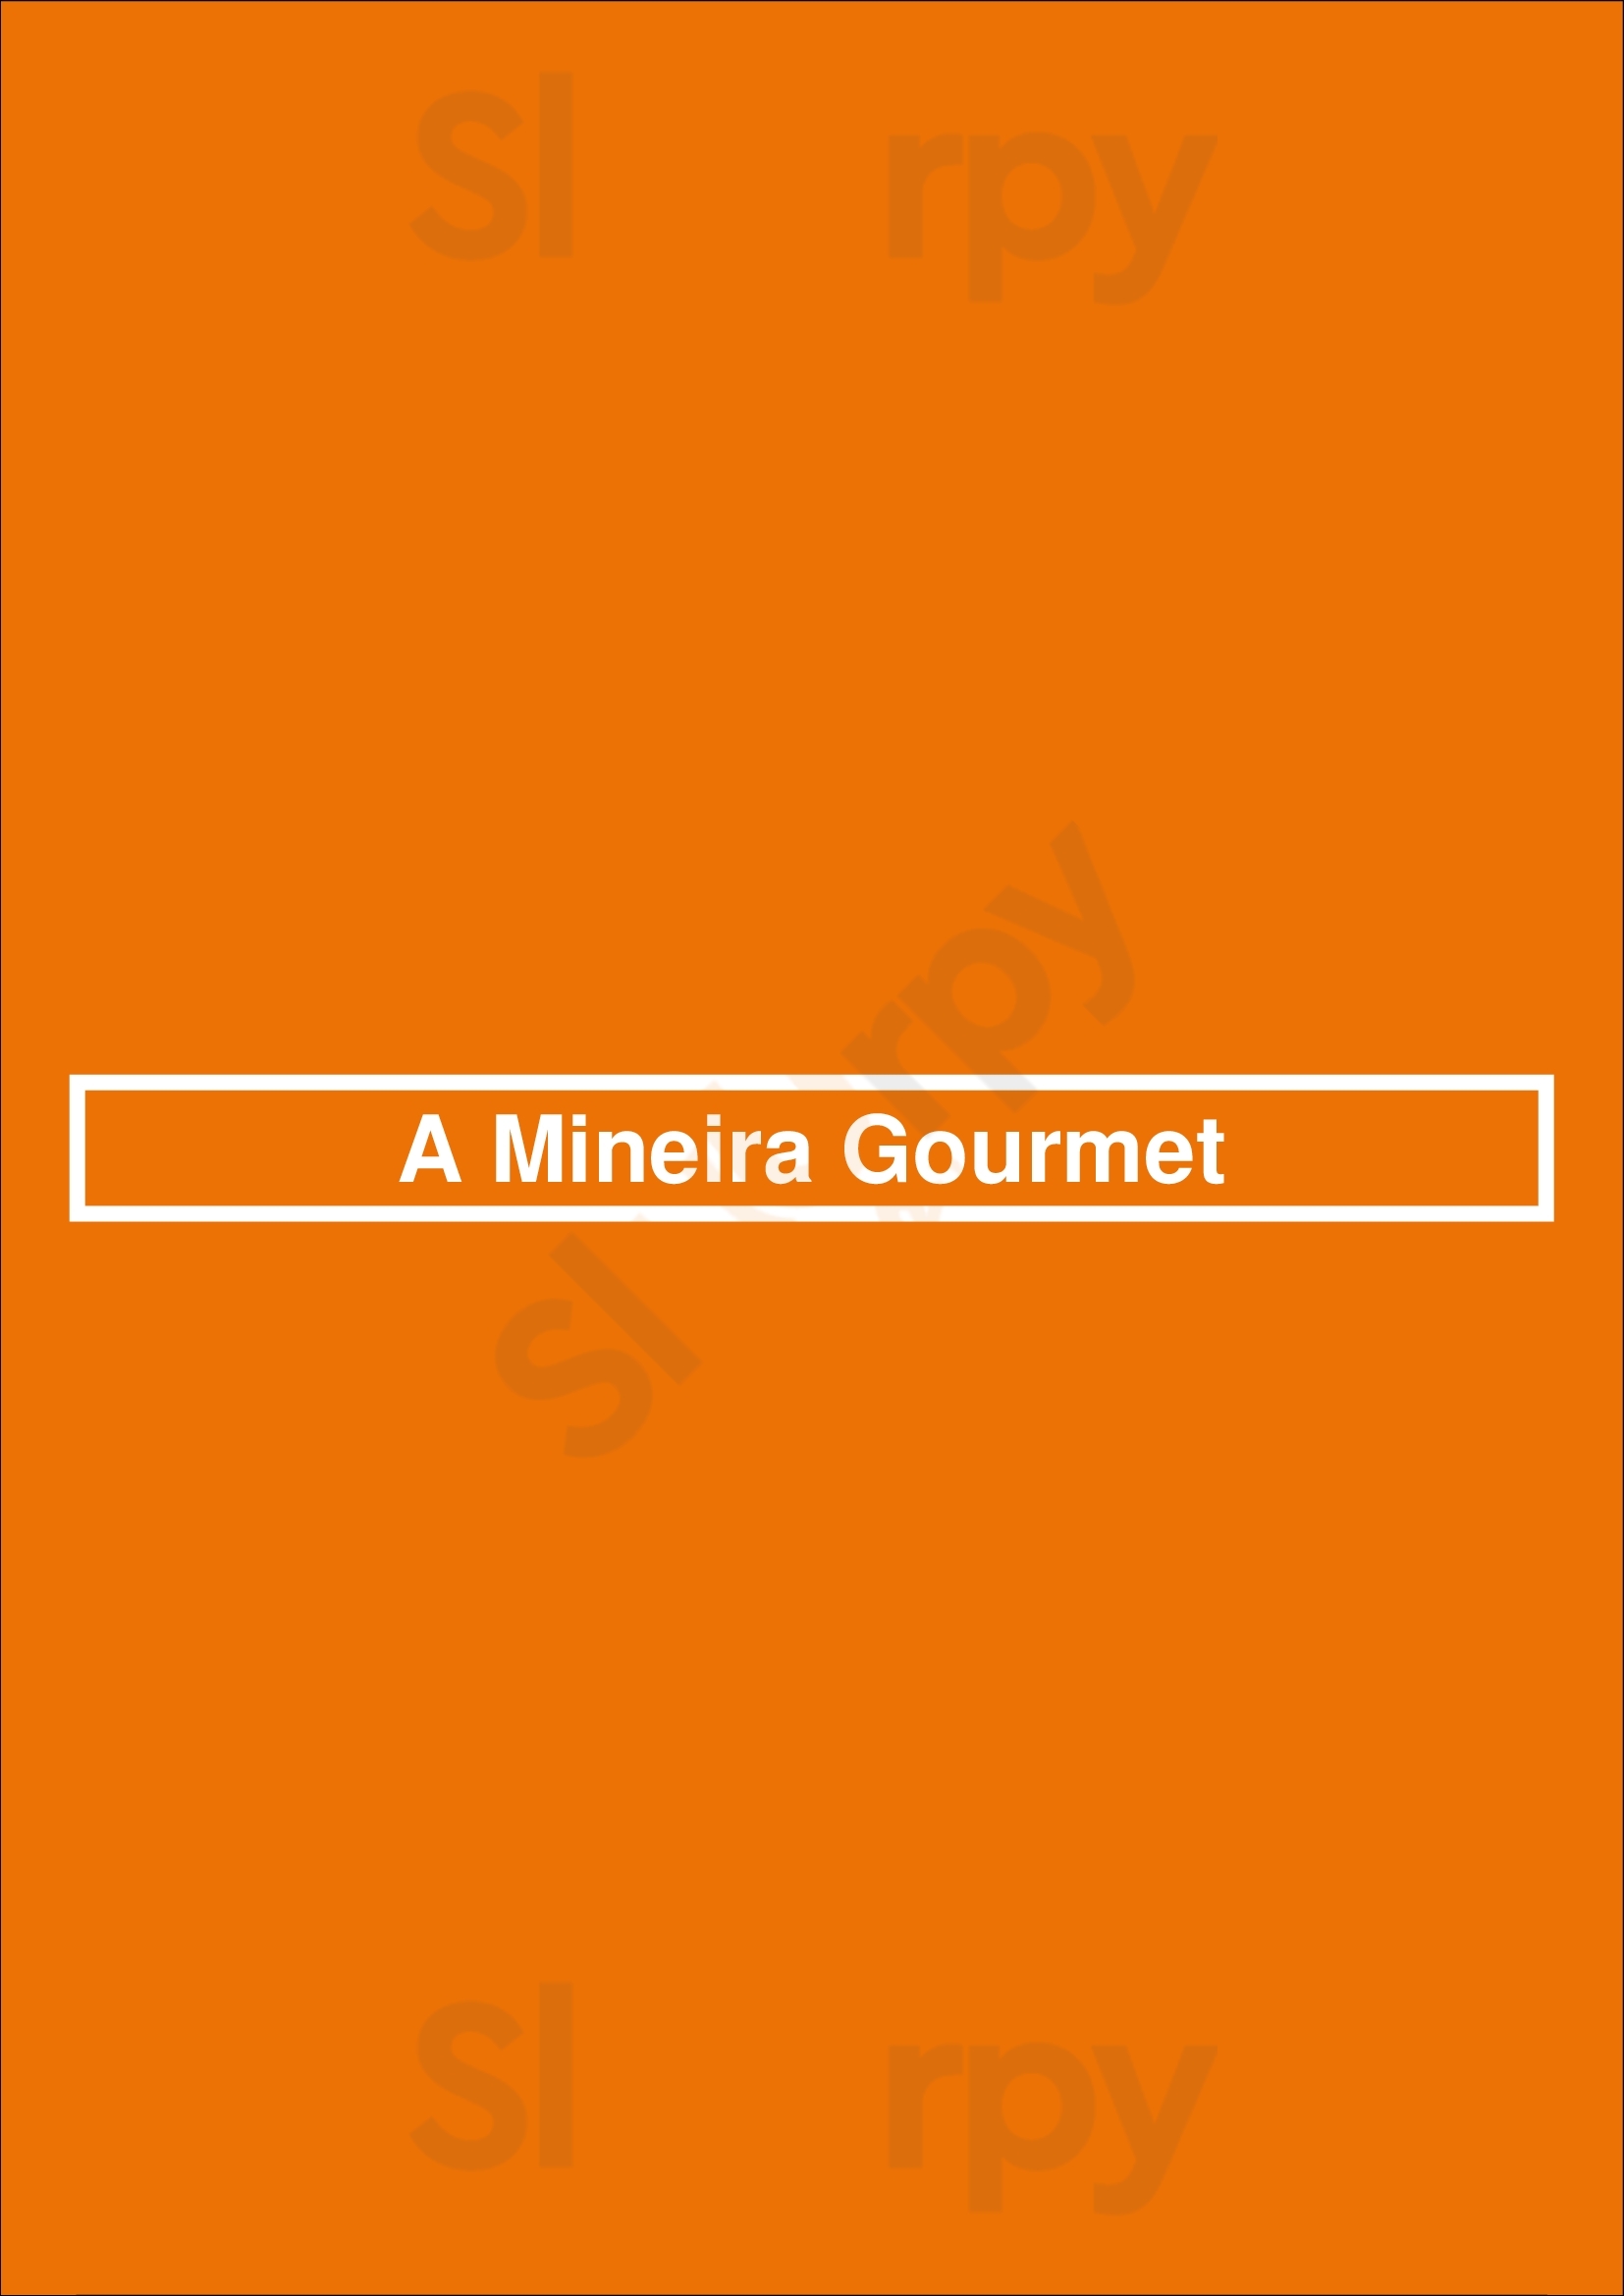 A Mineira Gourmet Niterói Menu - 1